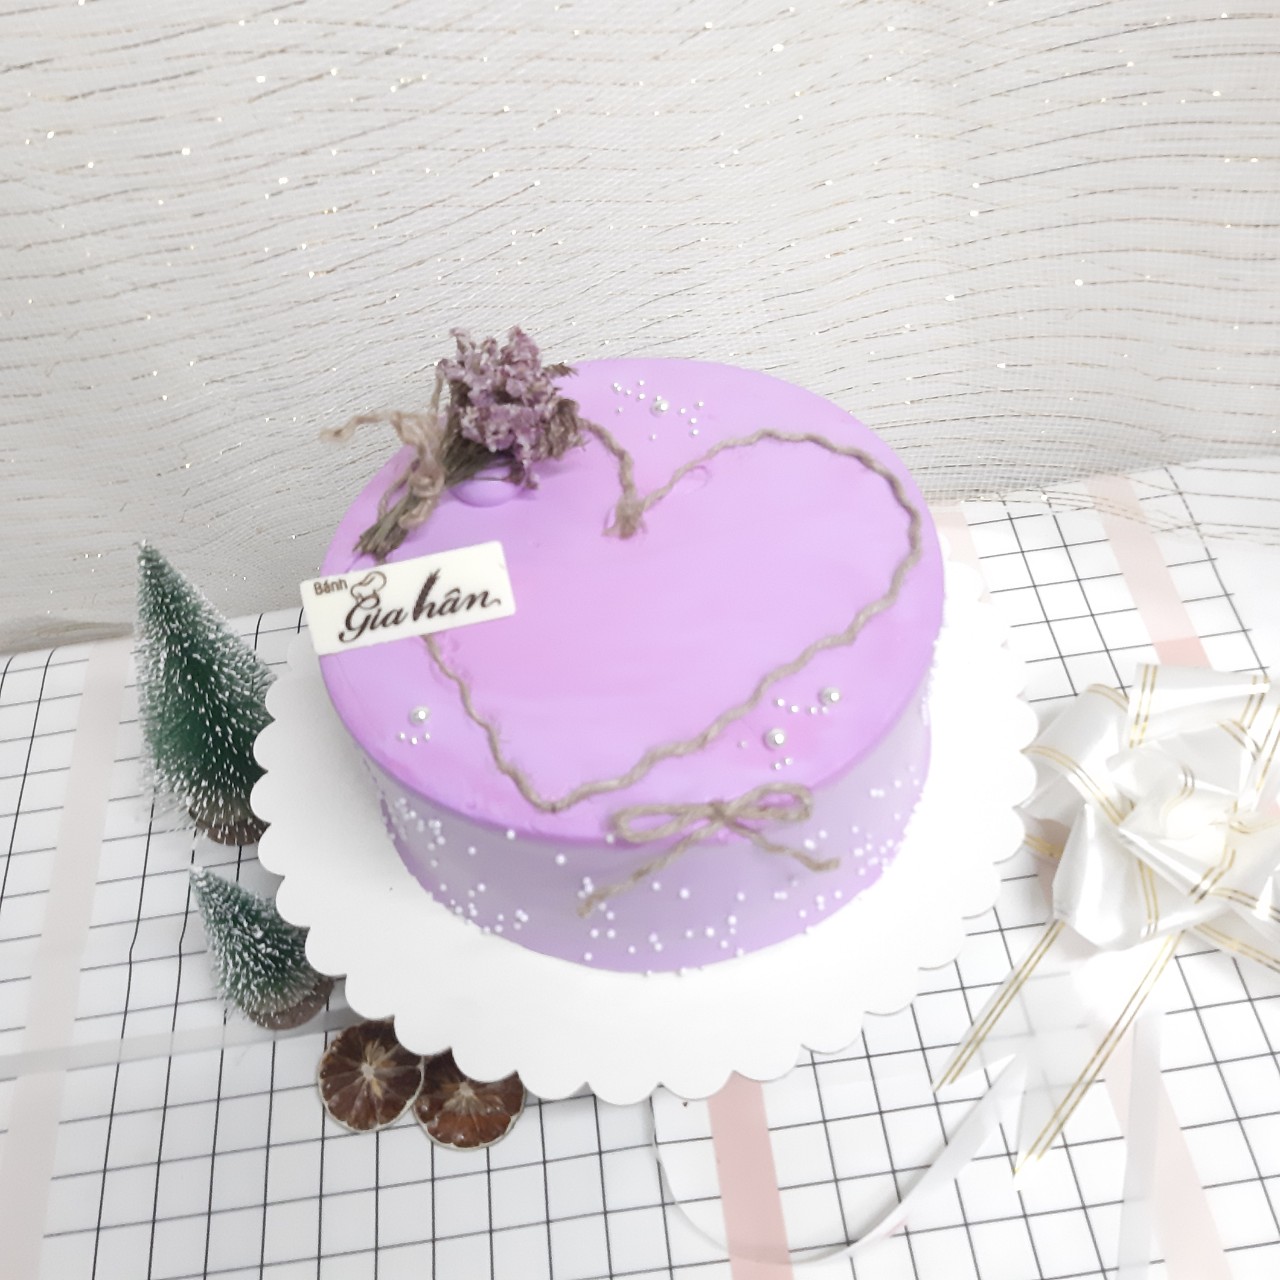 Với màu tím tươi sáng và thiết kế độc đáo của nó, bánh kem màu tím là một trong những mẫu bánh sinh nhật đẹp nhất mà bạn sẽ tìm thấy. Với những chi tiết tinh xảo và trang trí tỉ mỉ, nó chắc chắn sẽ làm cho bất kỳ buổi tiệc sinh nhật nào trở nên nổi bật hơn cả. Xem hình ảnh để cảm nhận sự độc đáo của nó.